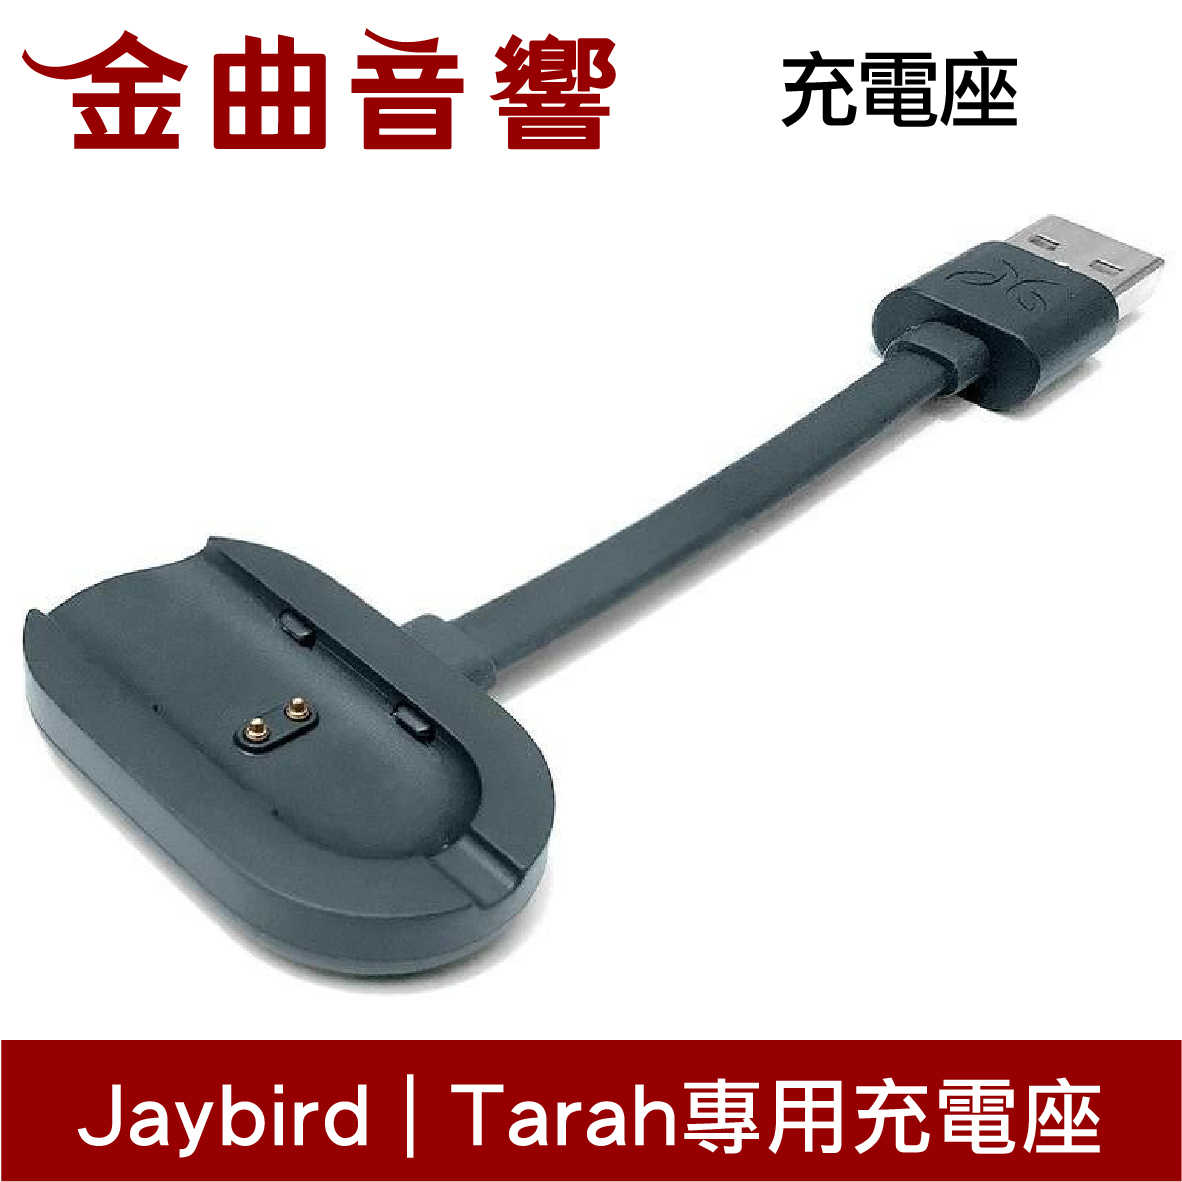 Jaybird Tarah 耳機 專用充電座 | 金曲音響